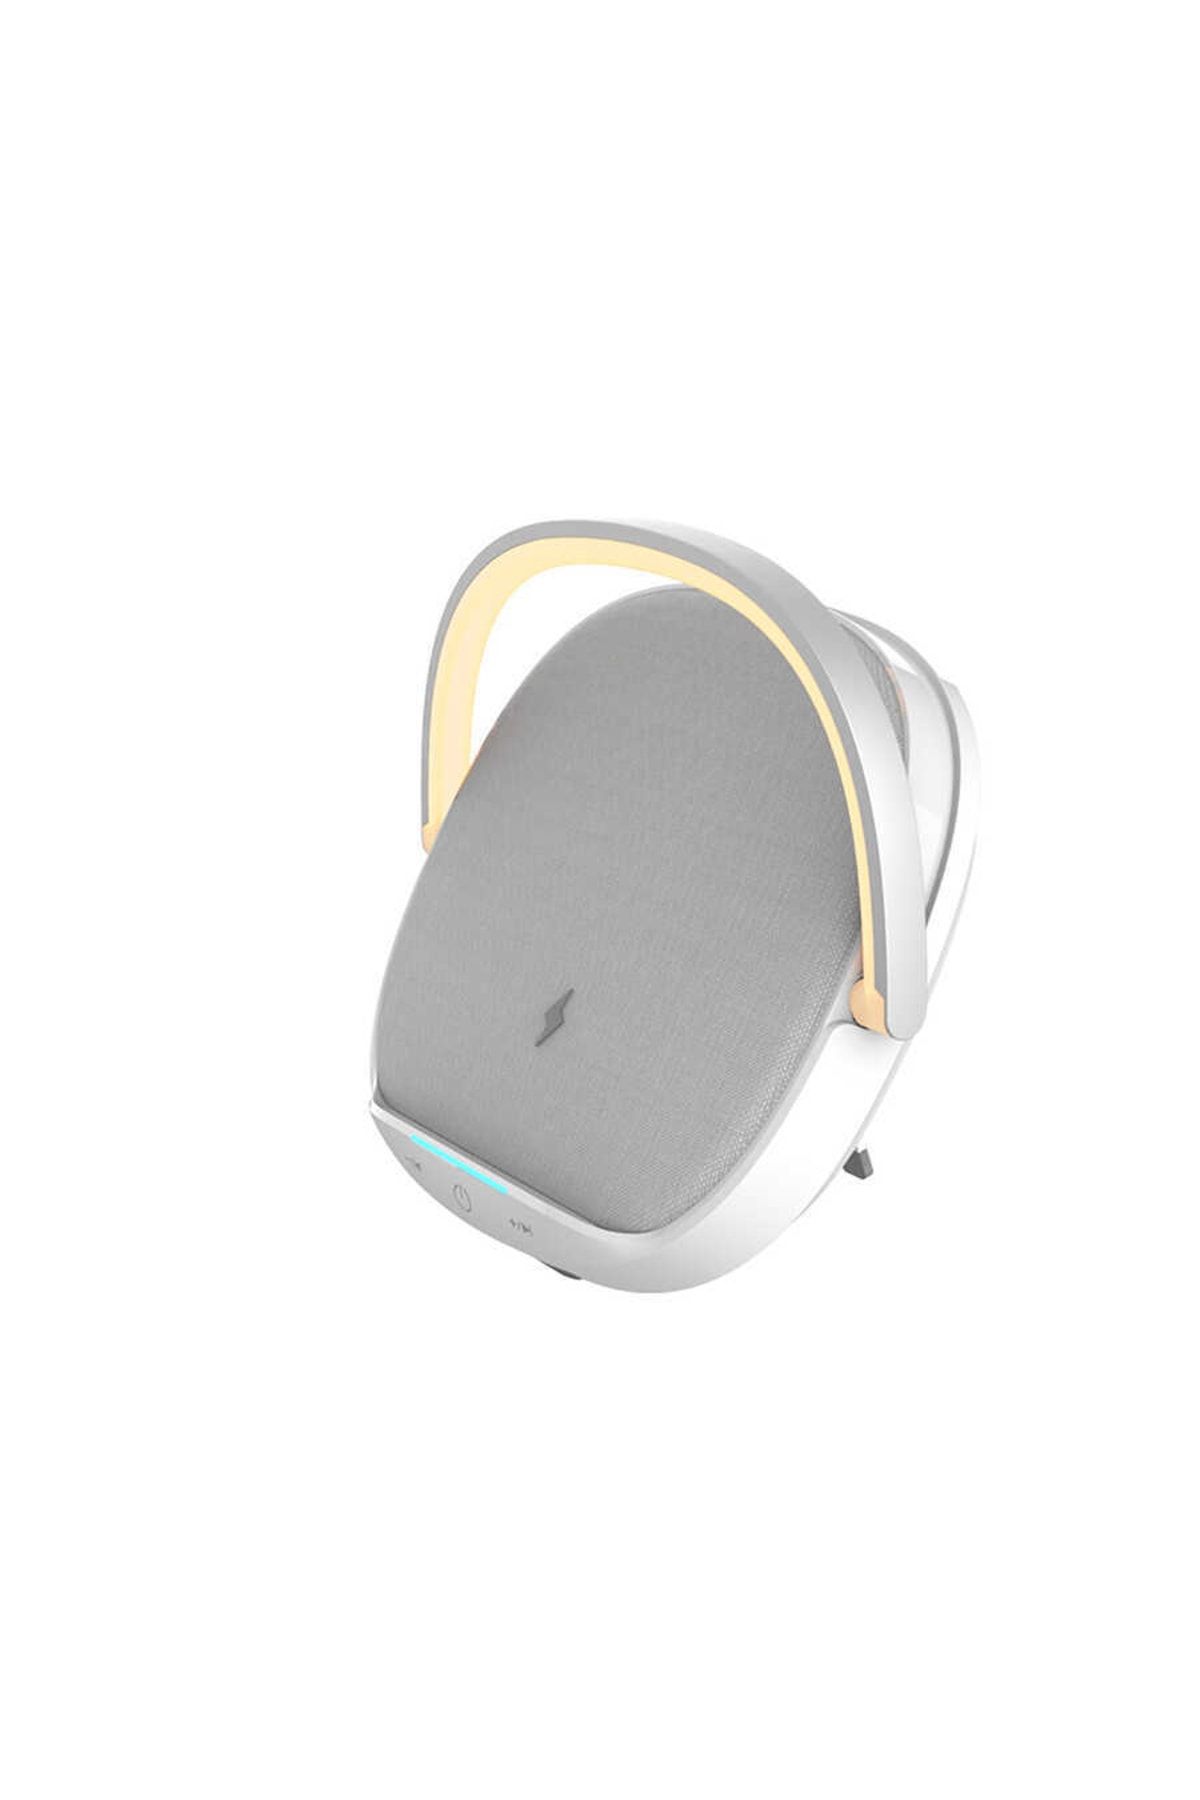 WIWU Cep-h Gece Lambalı Ve Kablosuz Şarj Standlı Bluetooth Speaker Hoparlör Y1